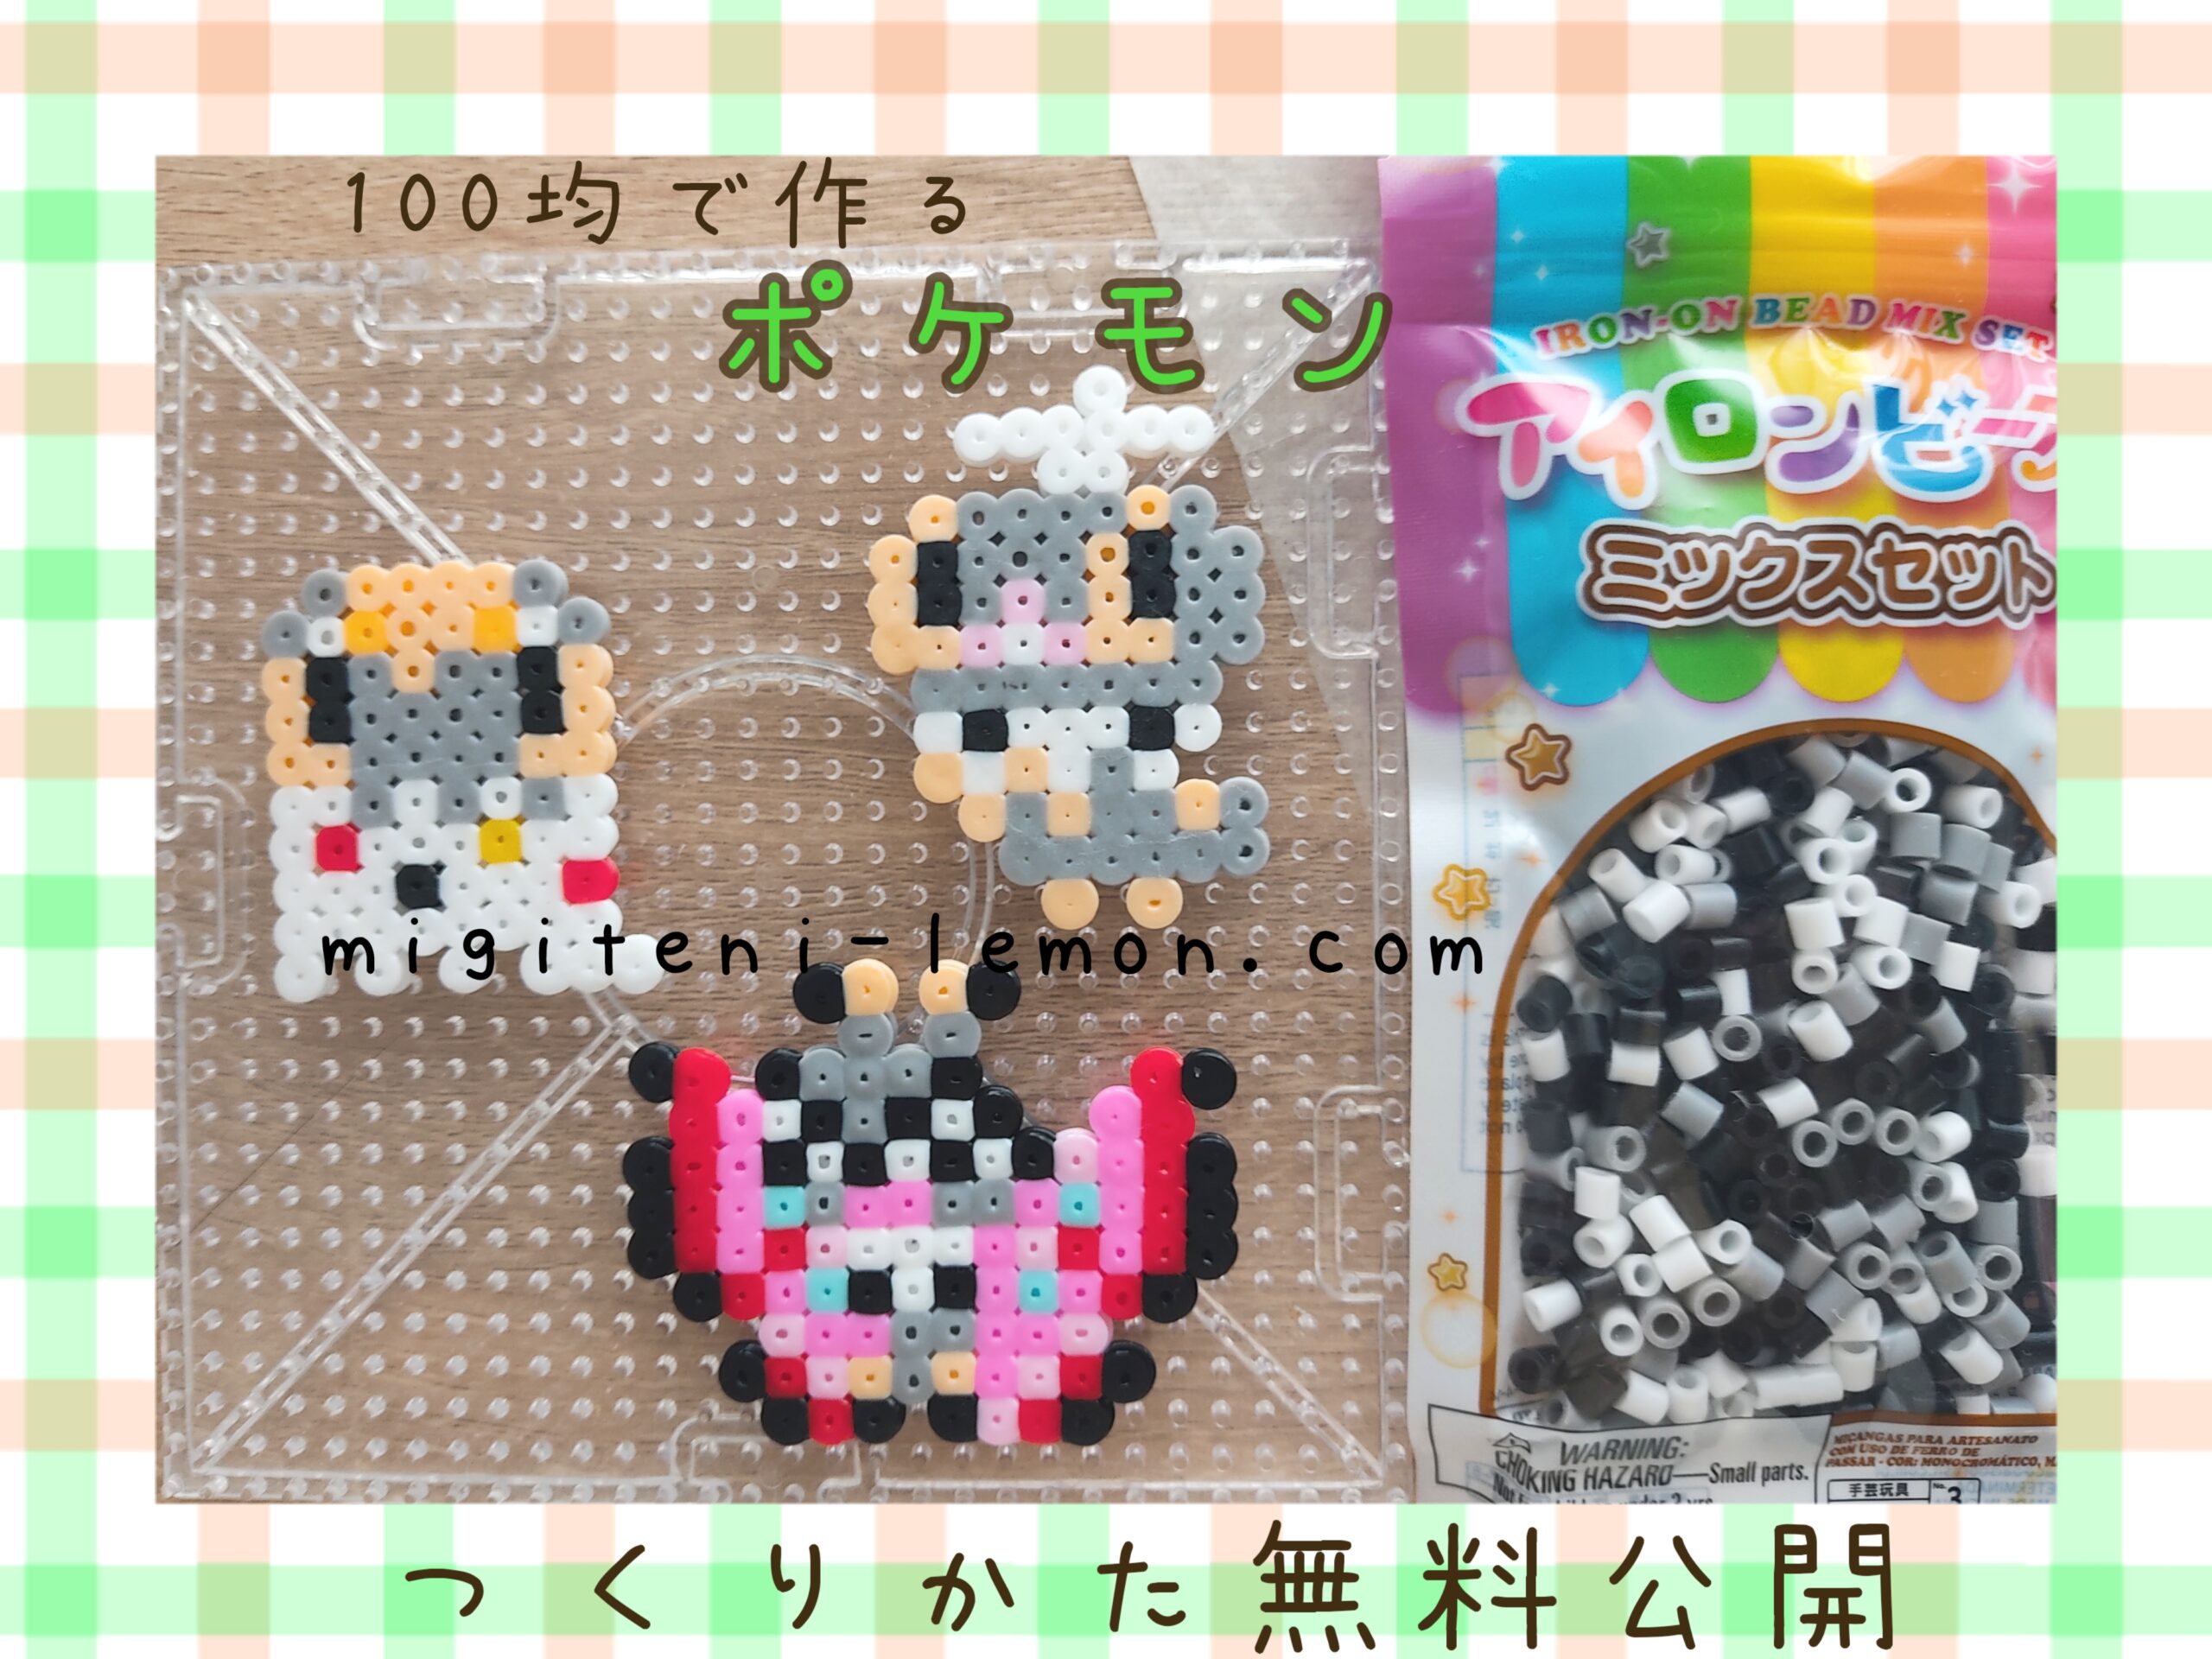 kofukimushi-scatterbug-kofuurai-spewpa-viviyon-vivillon-pokemon-beads